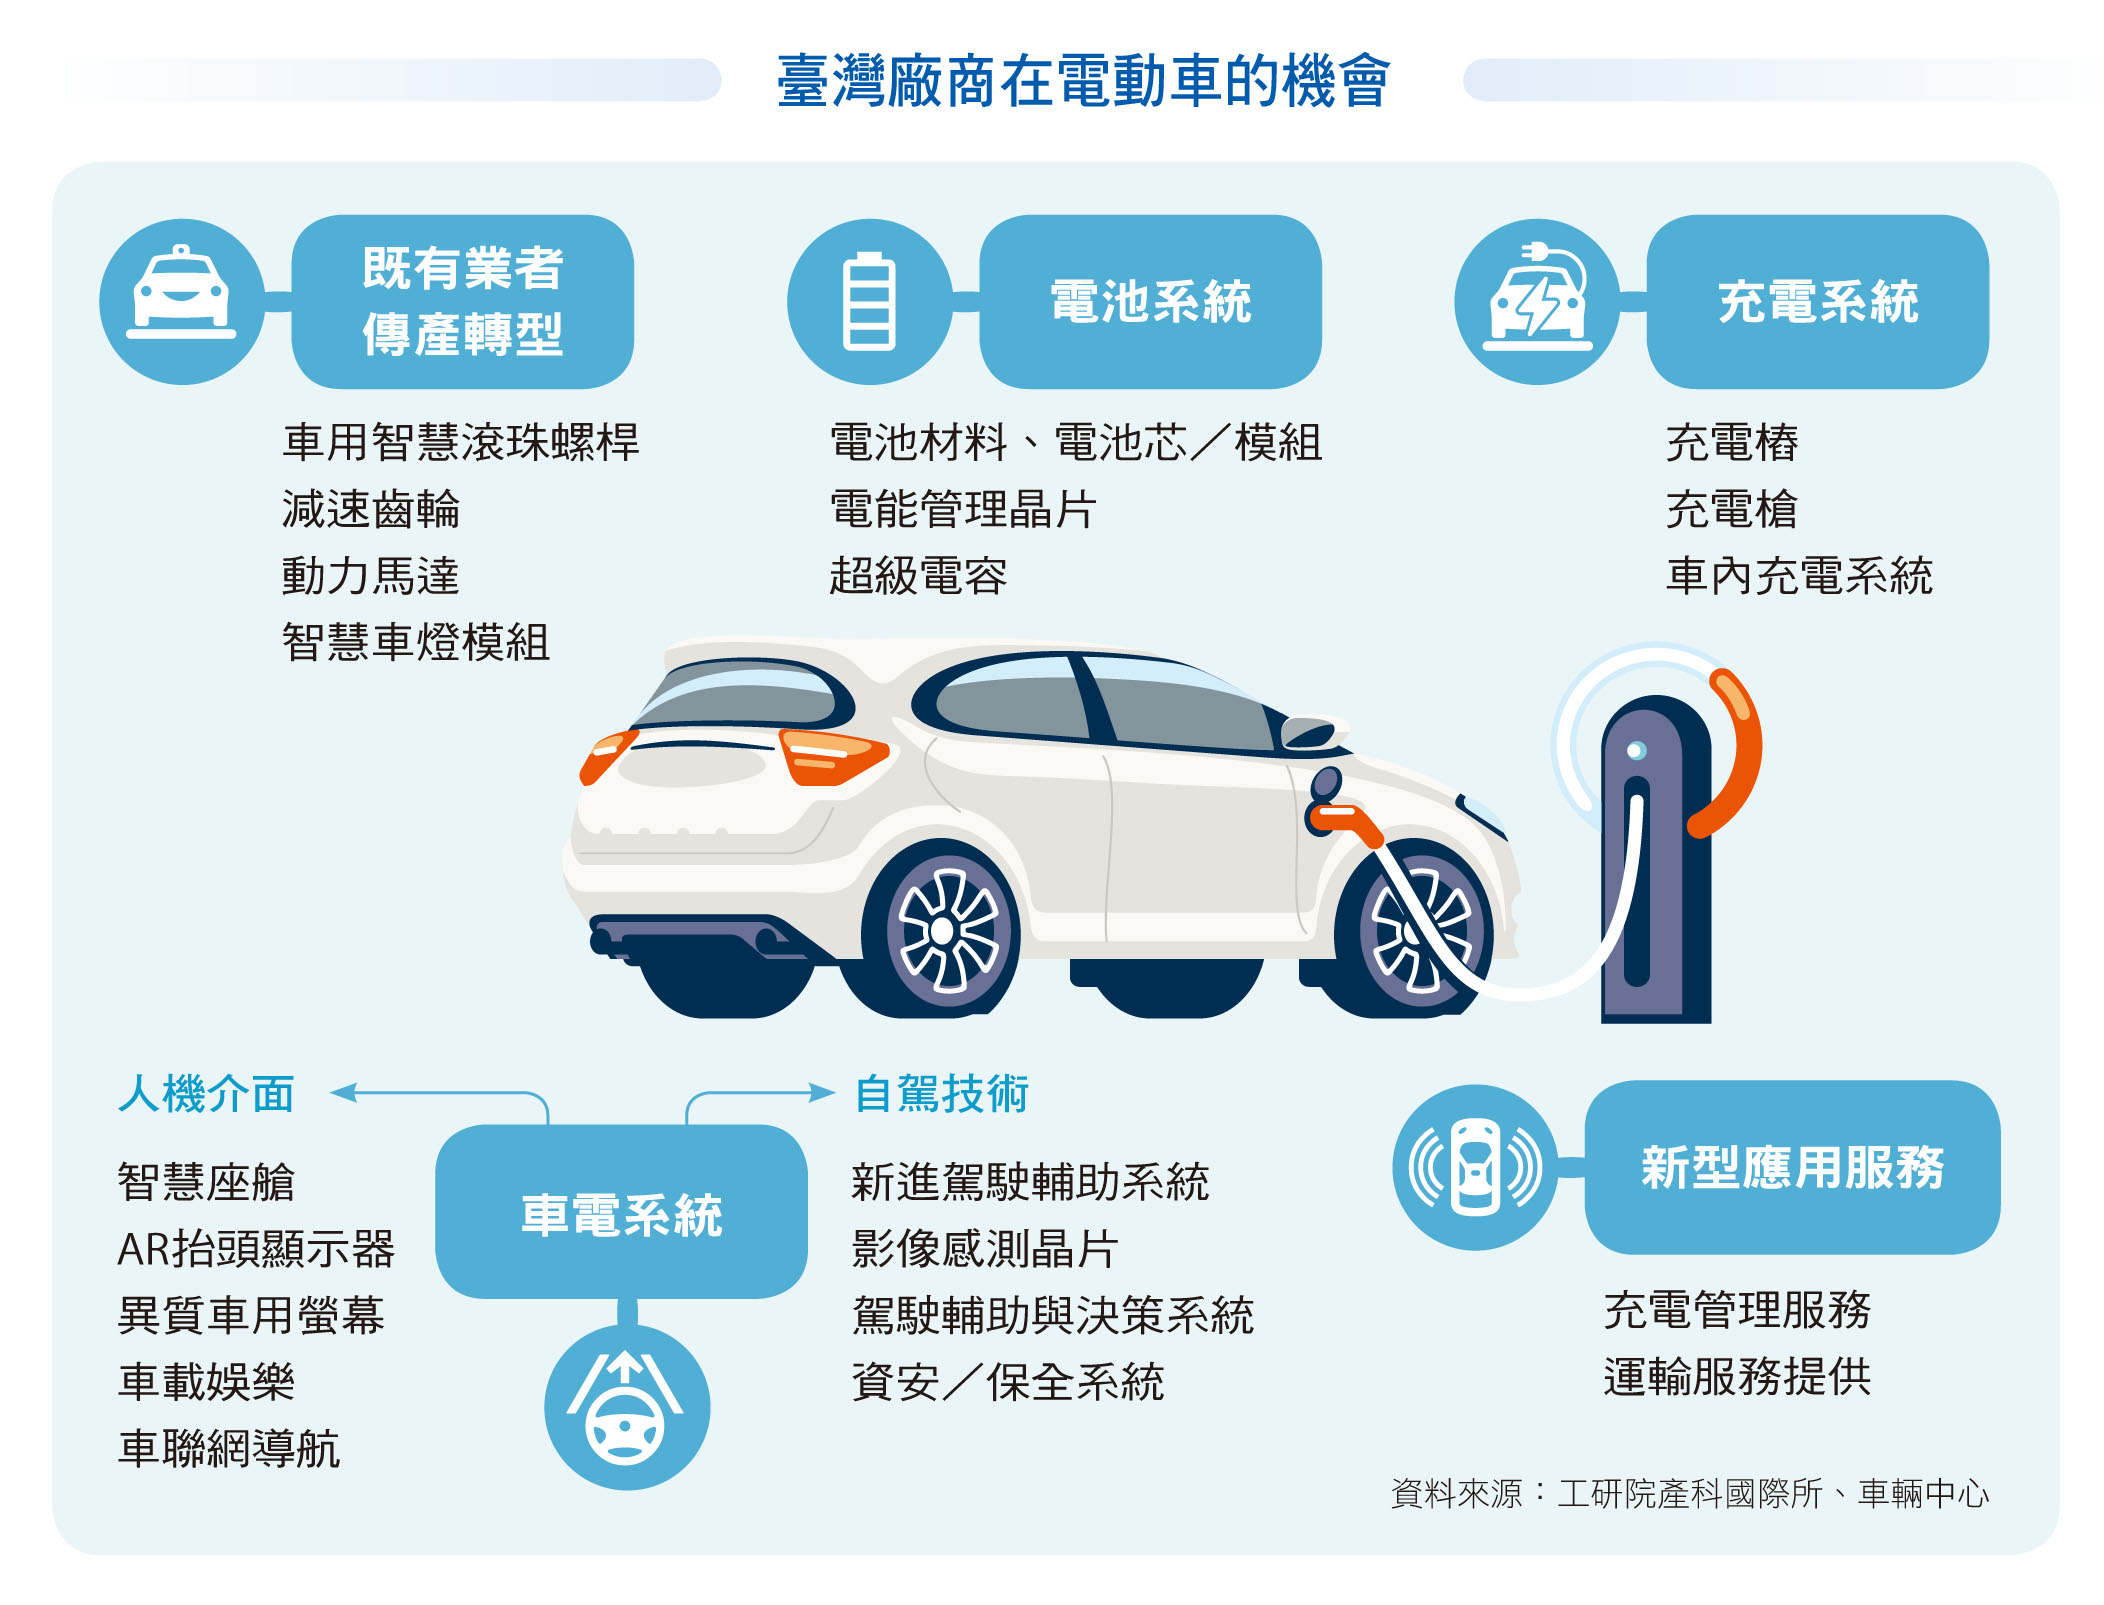 臺灣廠商在電動車的機會。